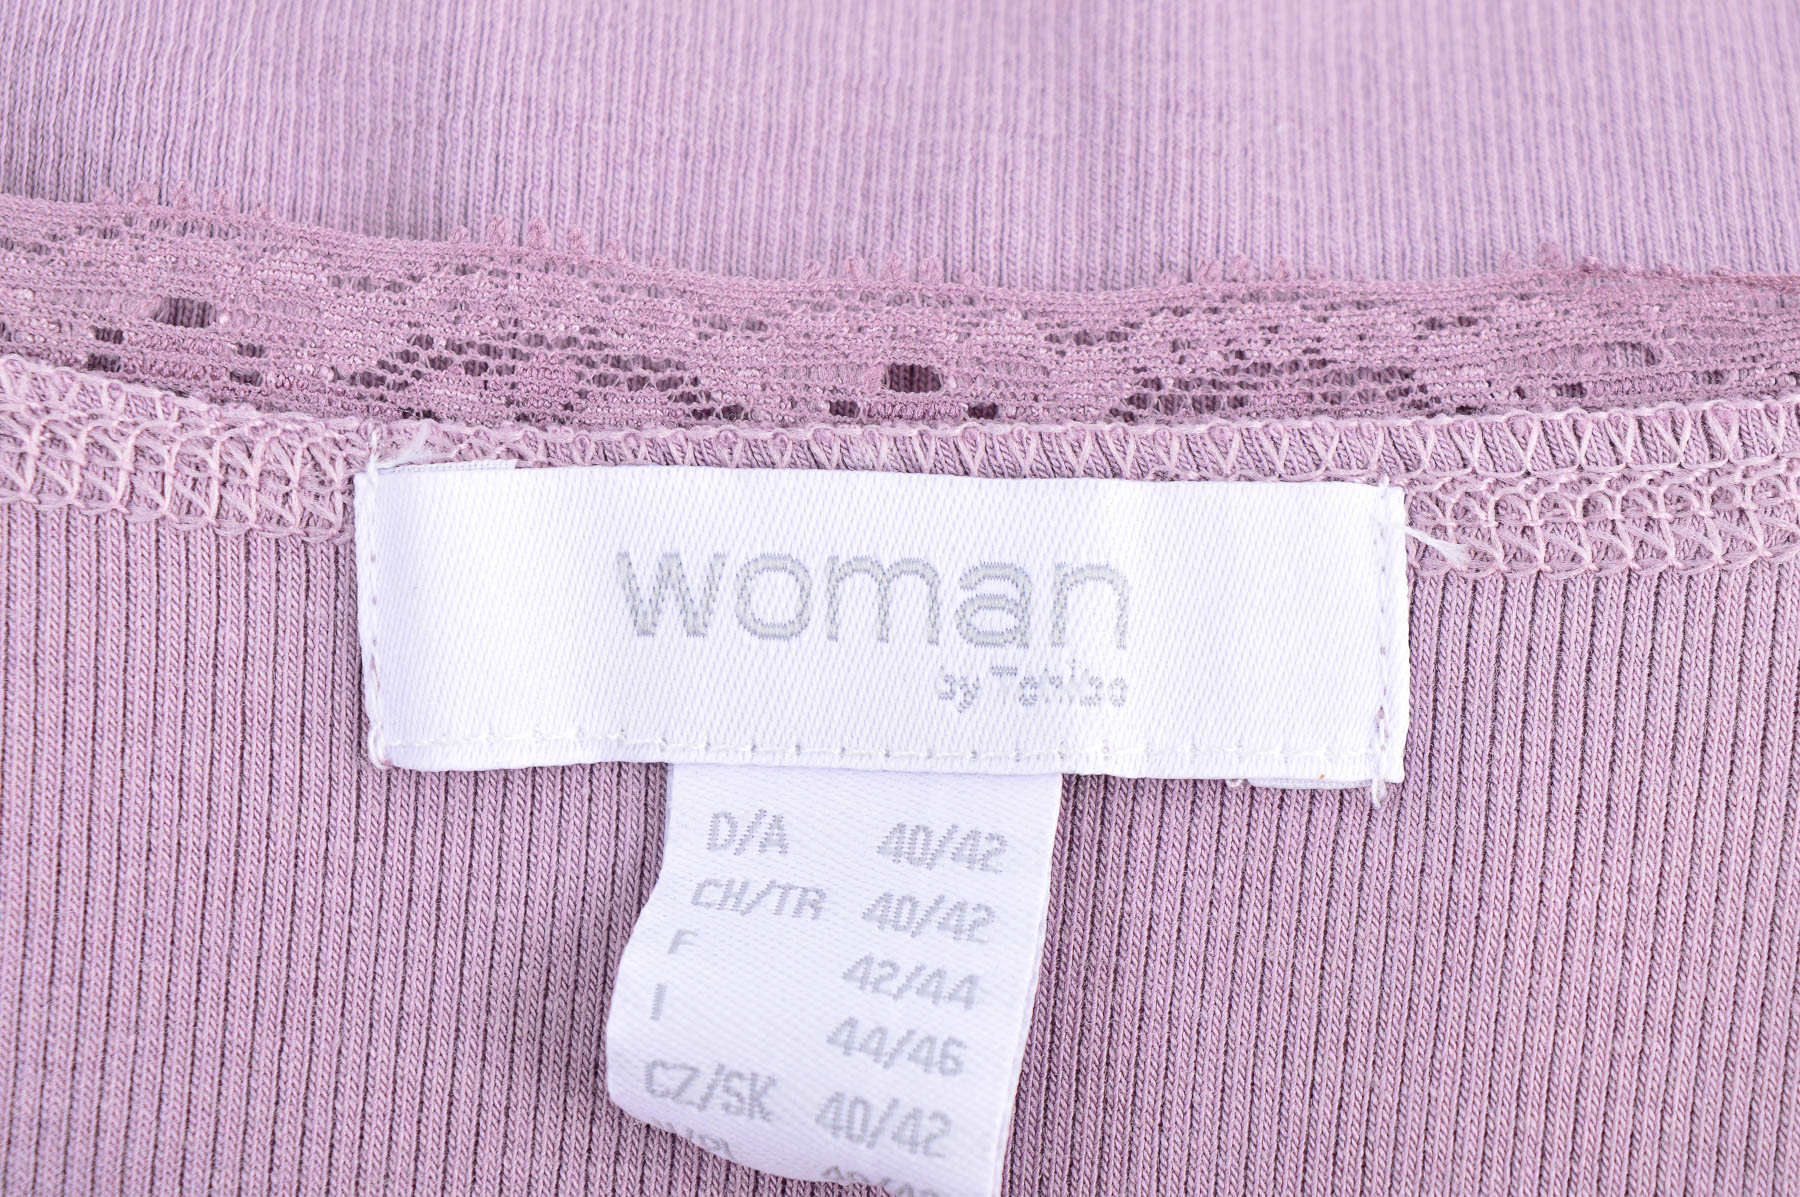 Γυναικεία μπλούζα - Woman by Tchibo - 2